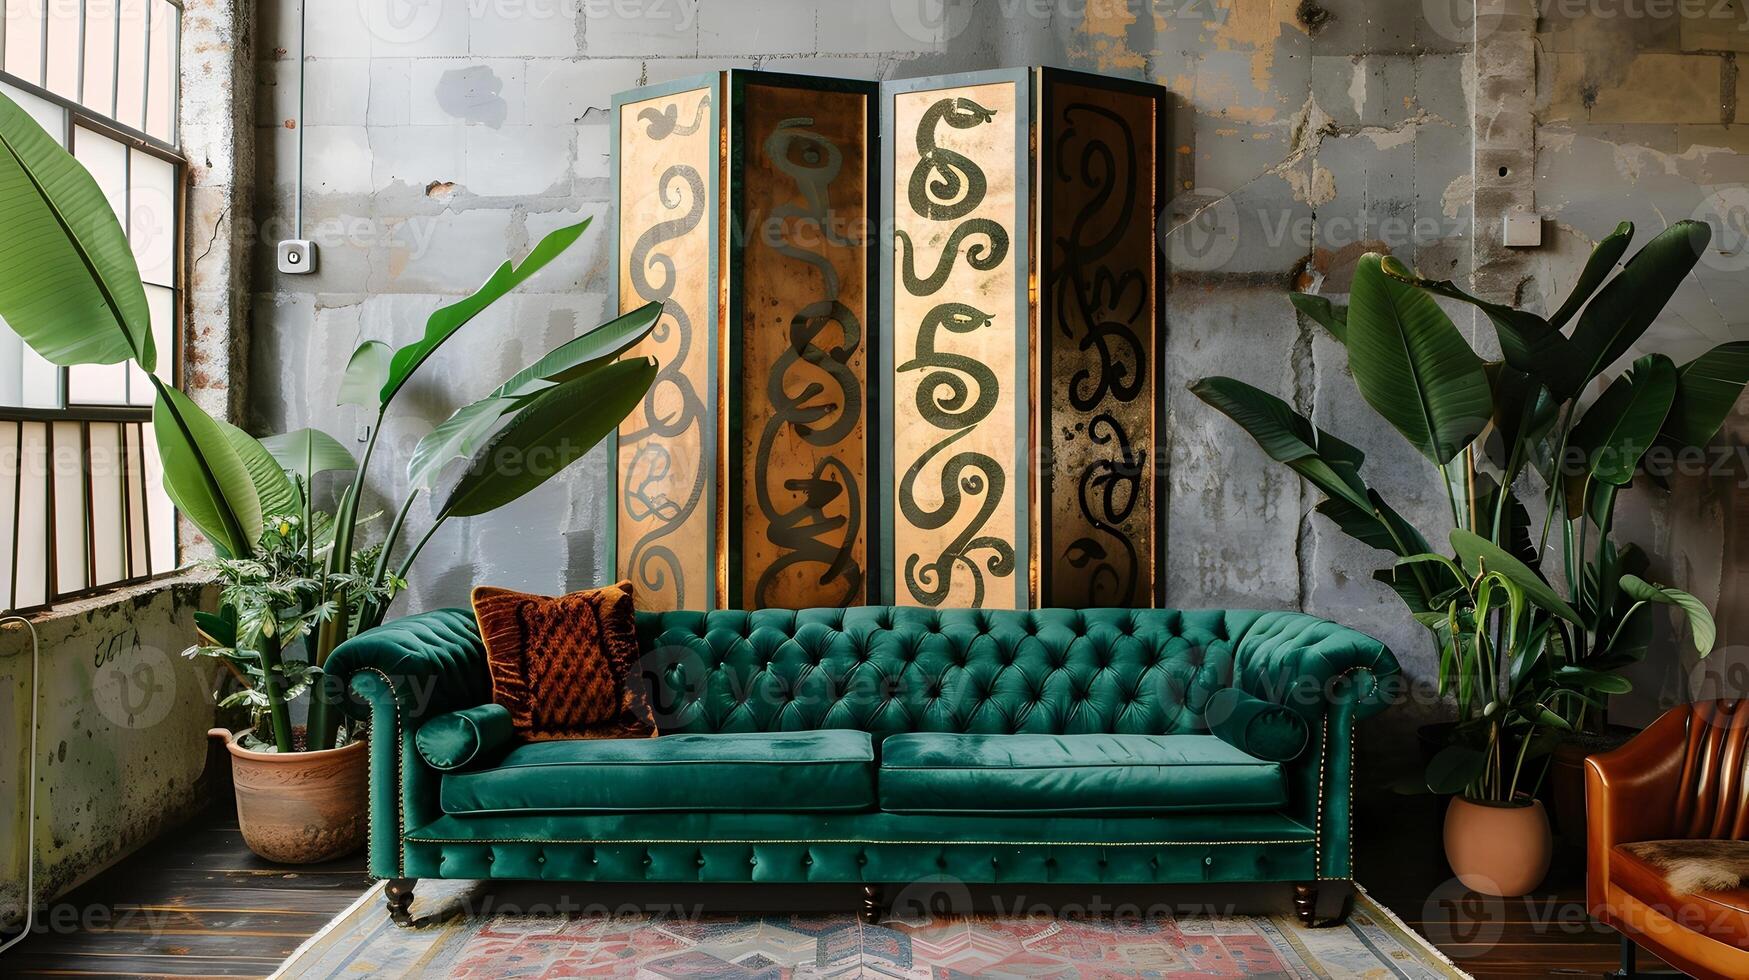 Vintage ▾ Smeraldo verde Chesterfield divano adorna industriale soffitta spazio con boho arredamento e tribale modelli foto